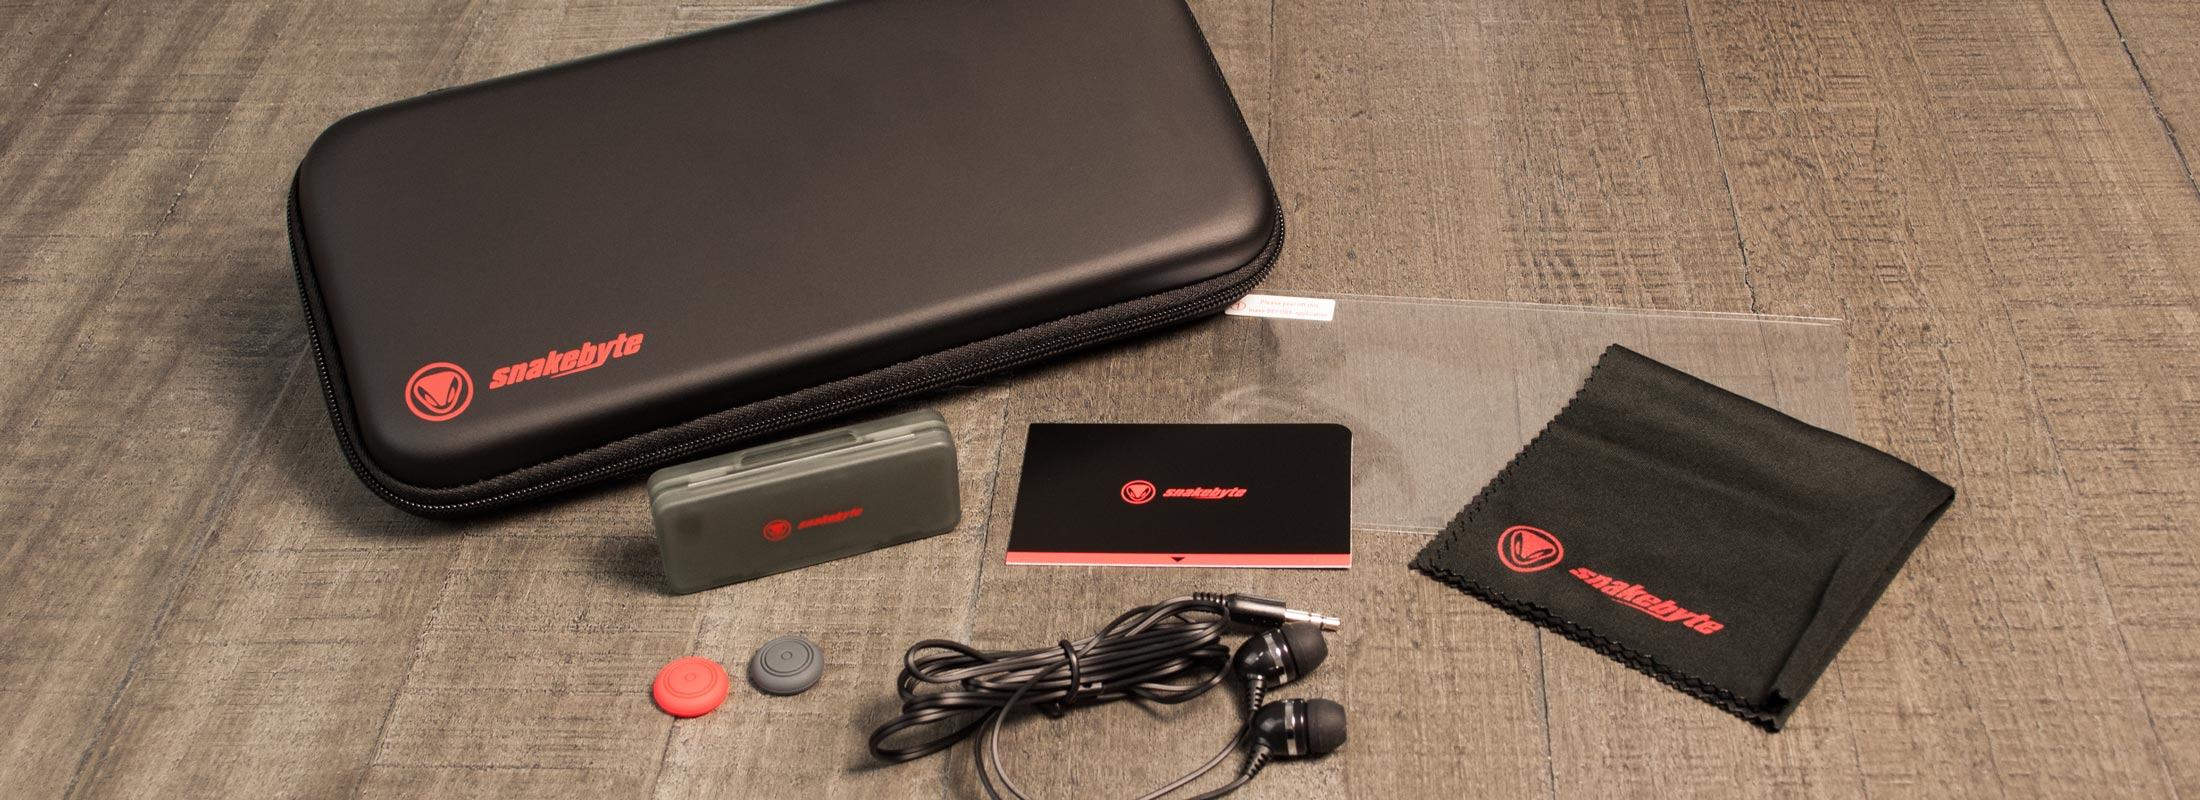 Snakebyte Nintendo Switch Starter Kit